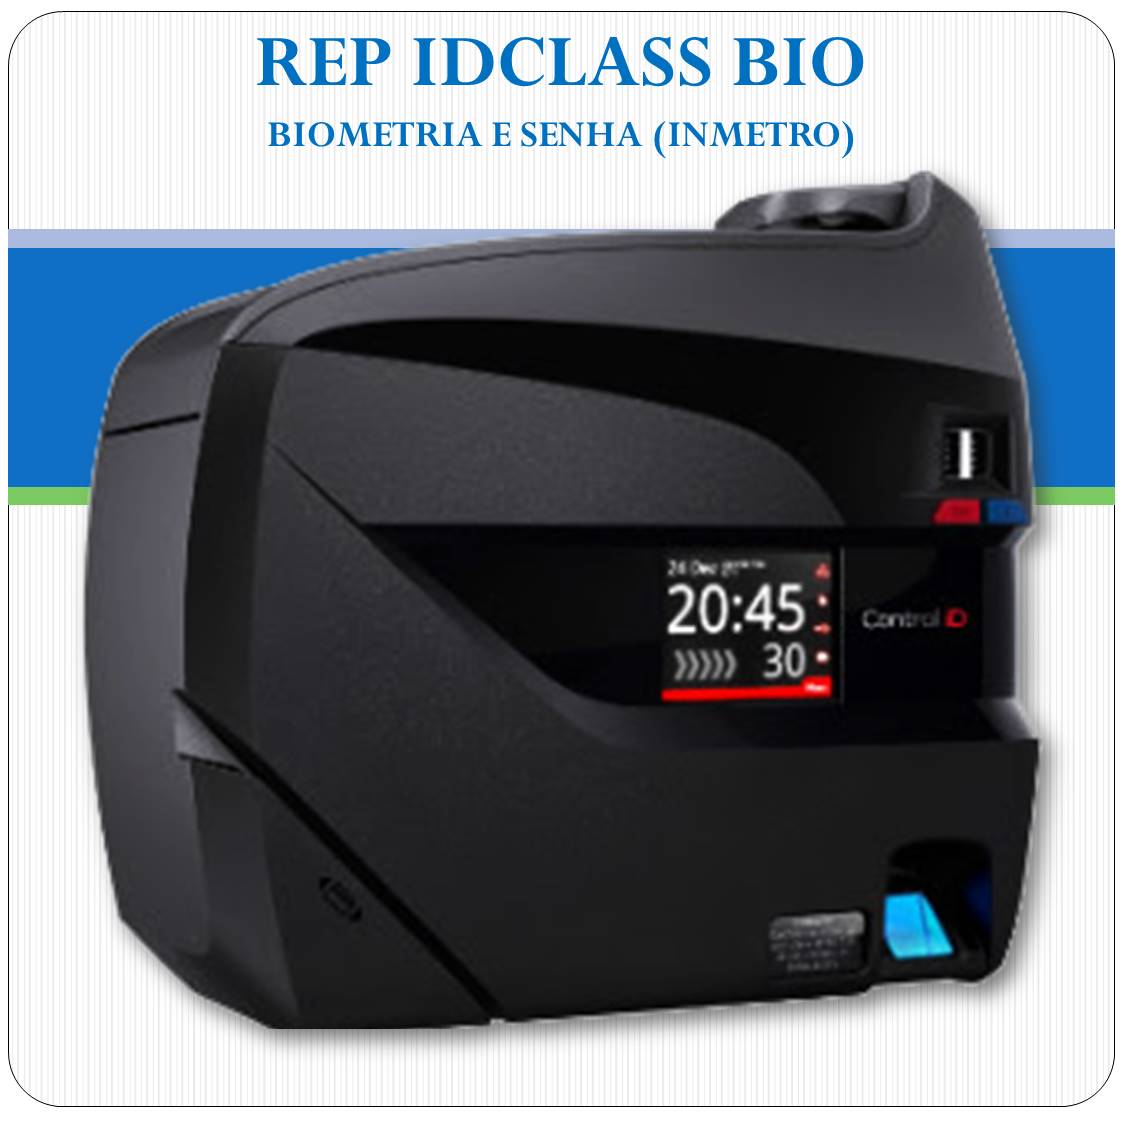 REP iDClass BIO - Biometria e Senha - Inmetro